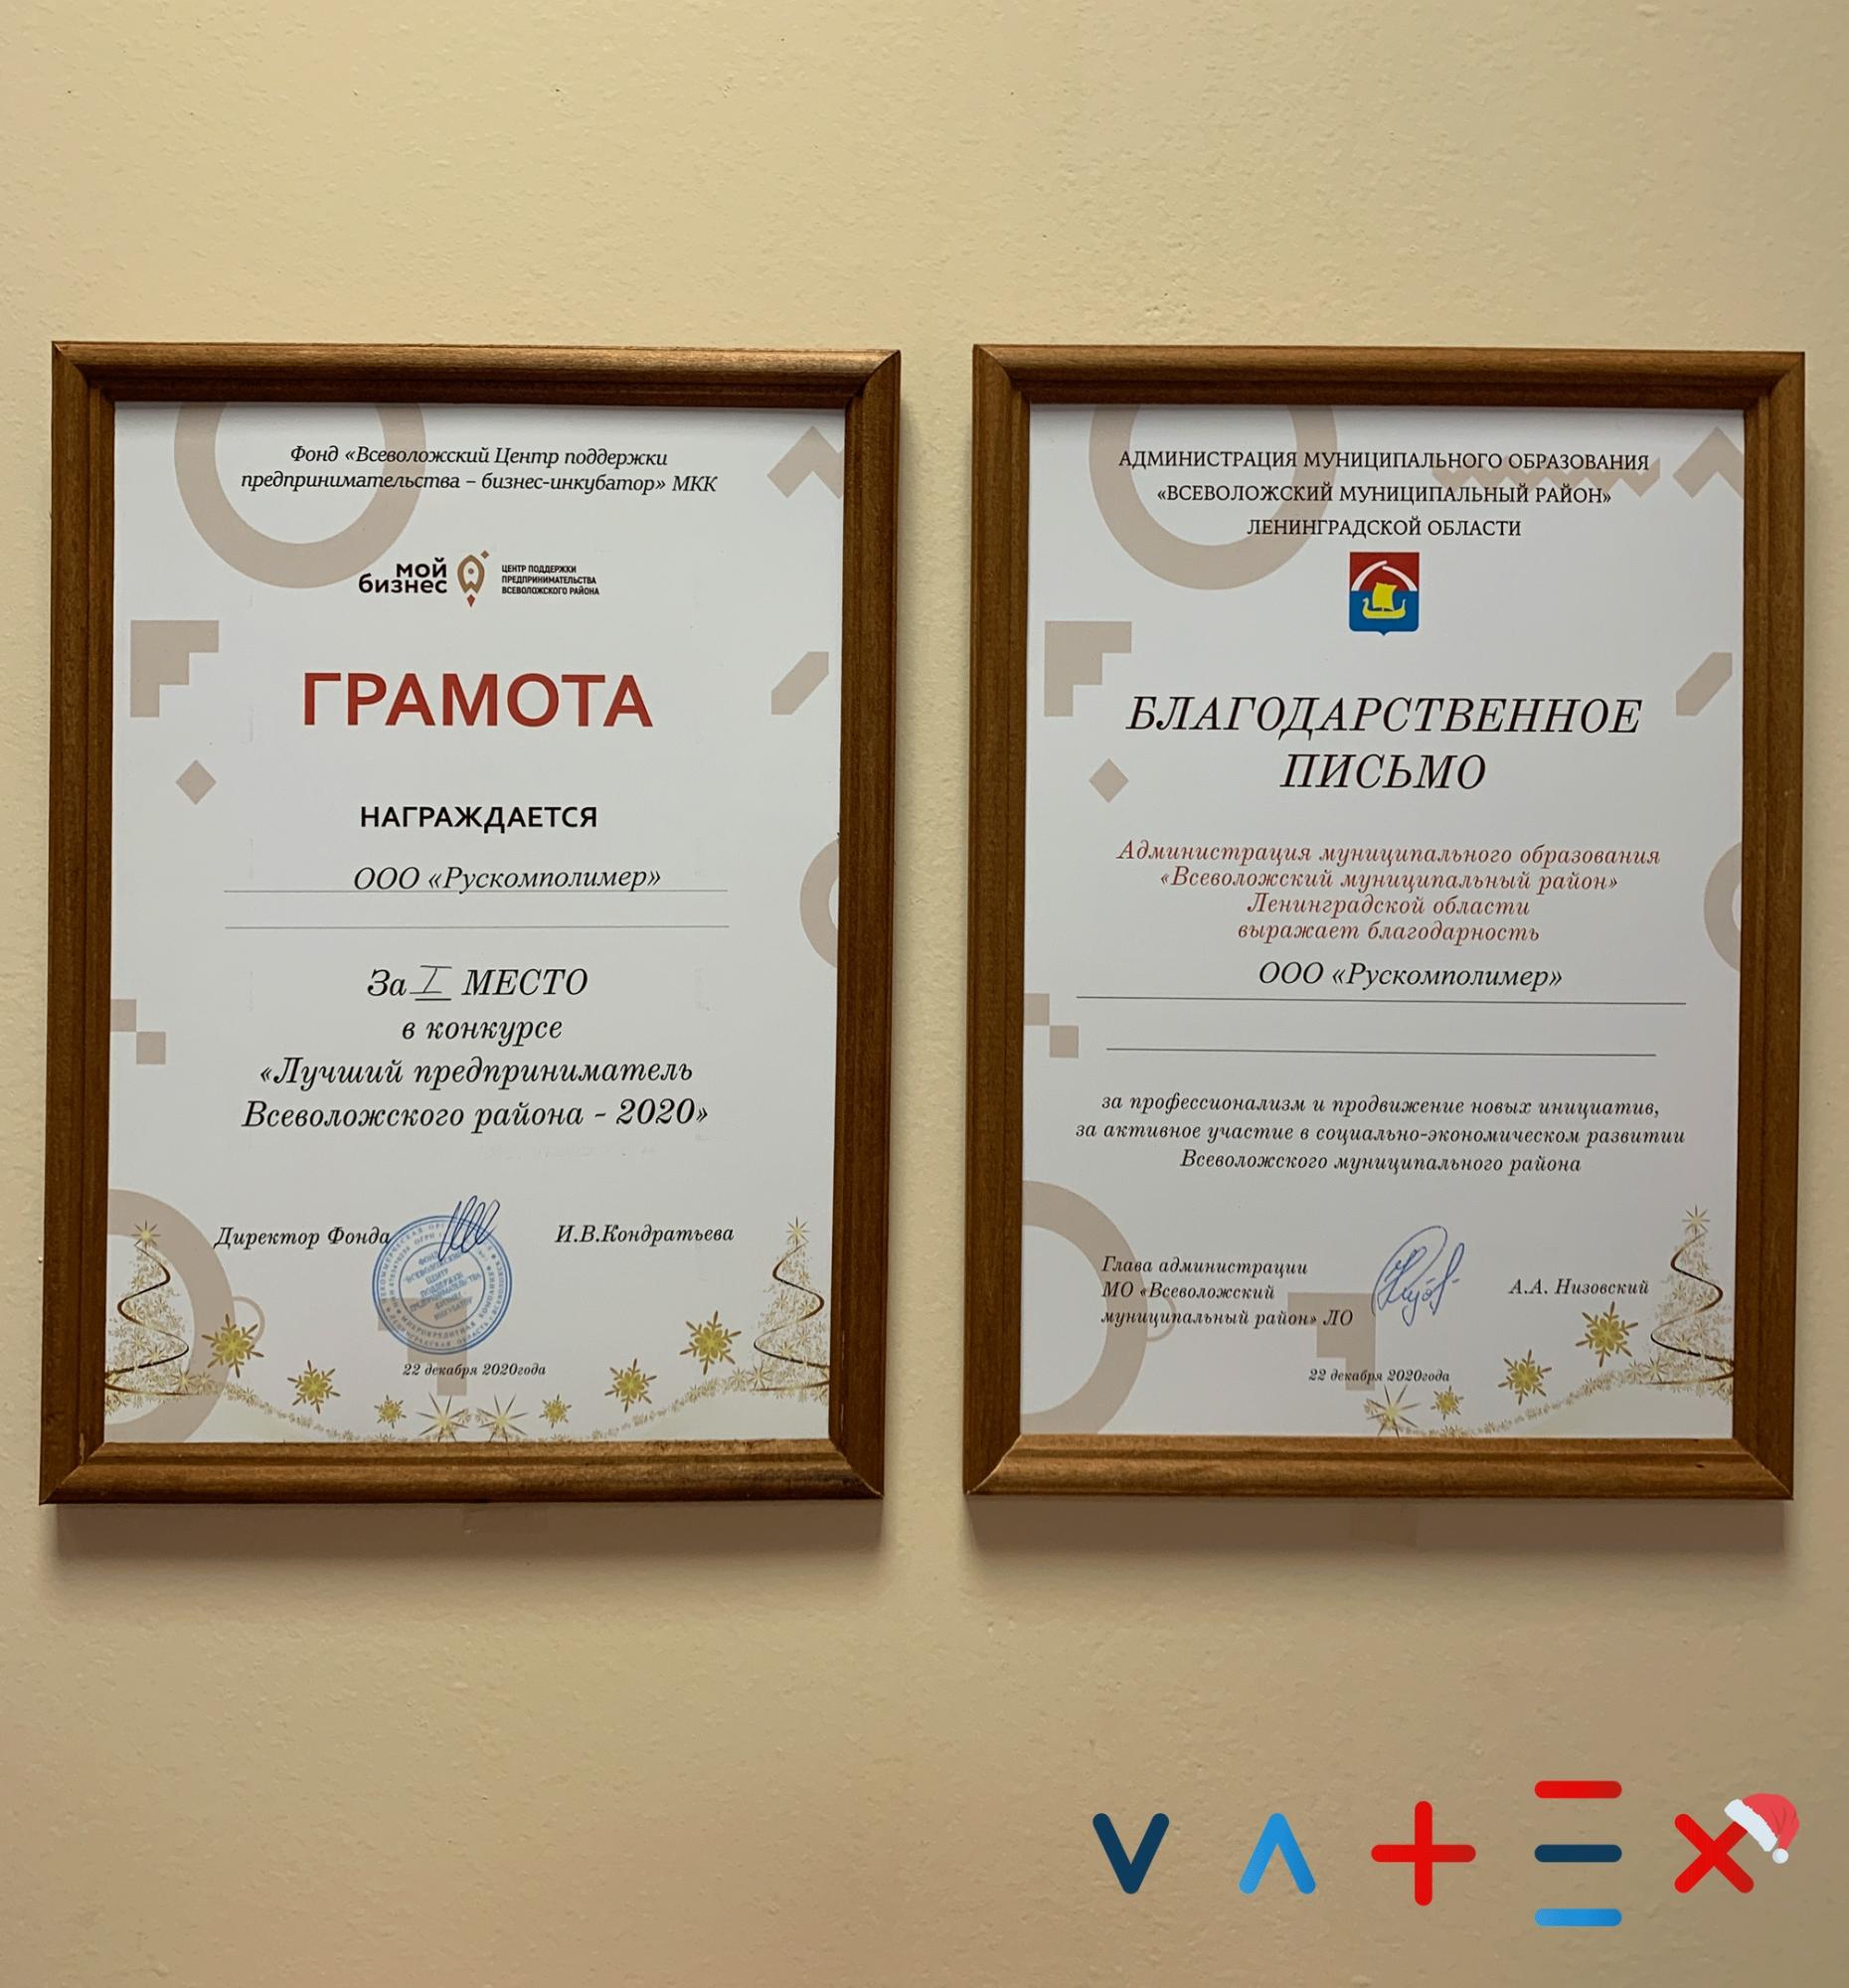 Производственная компания VATEX заняла 1 место в конкурсе "Лучший предприниматель Всеволожского района-2020"